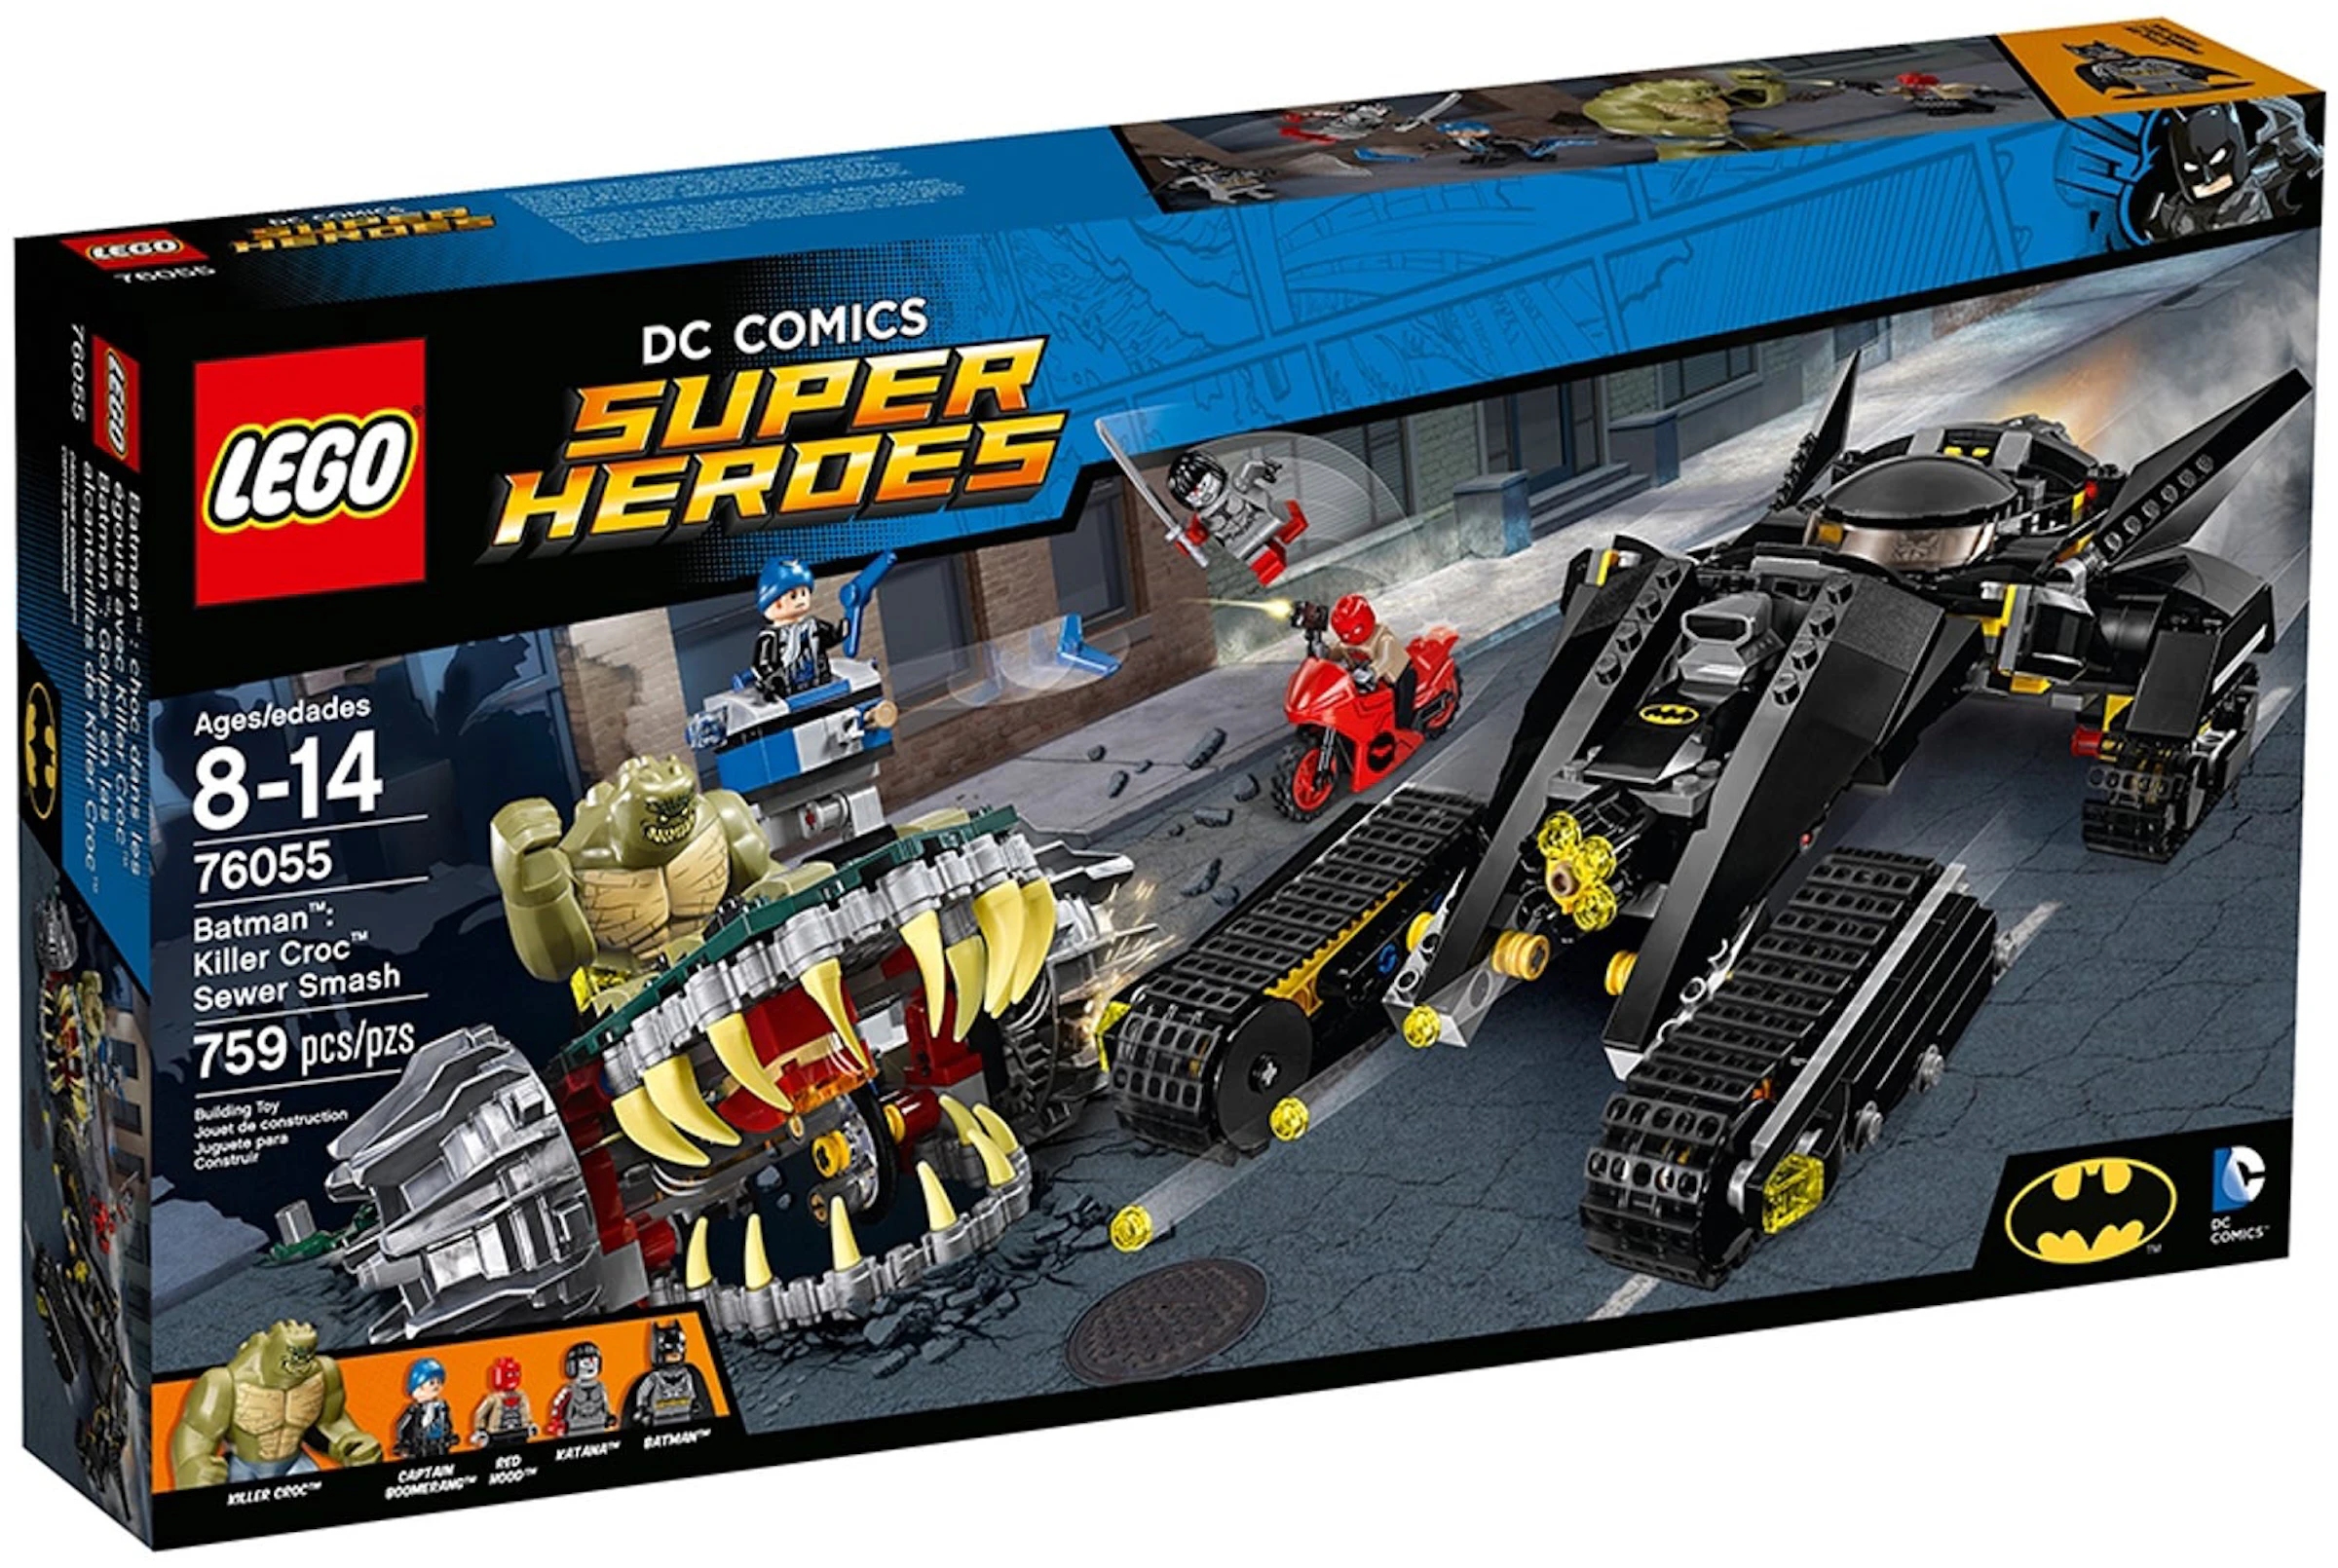 LEGO DC Comics Super Heroes Batman: Killer Cros Sewer Smash Set 76055 - US